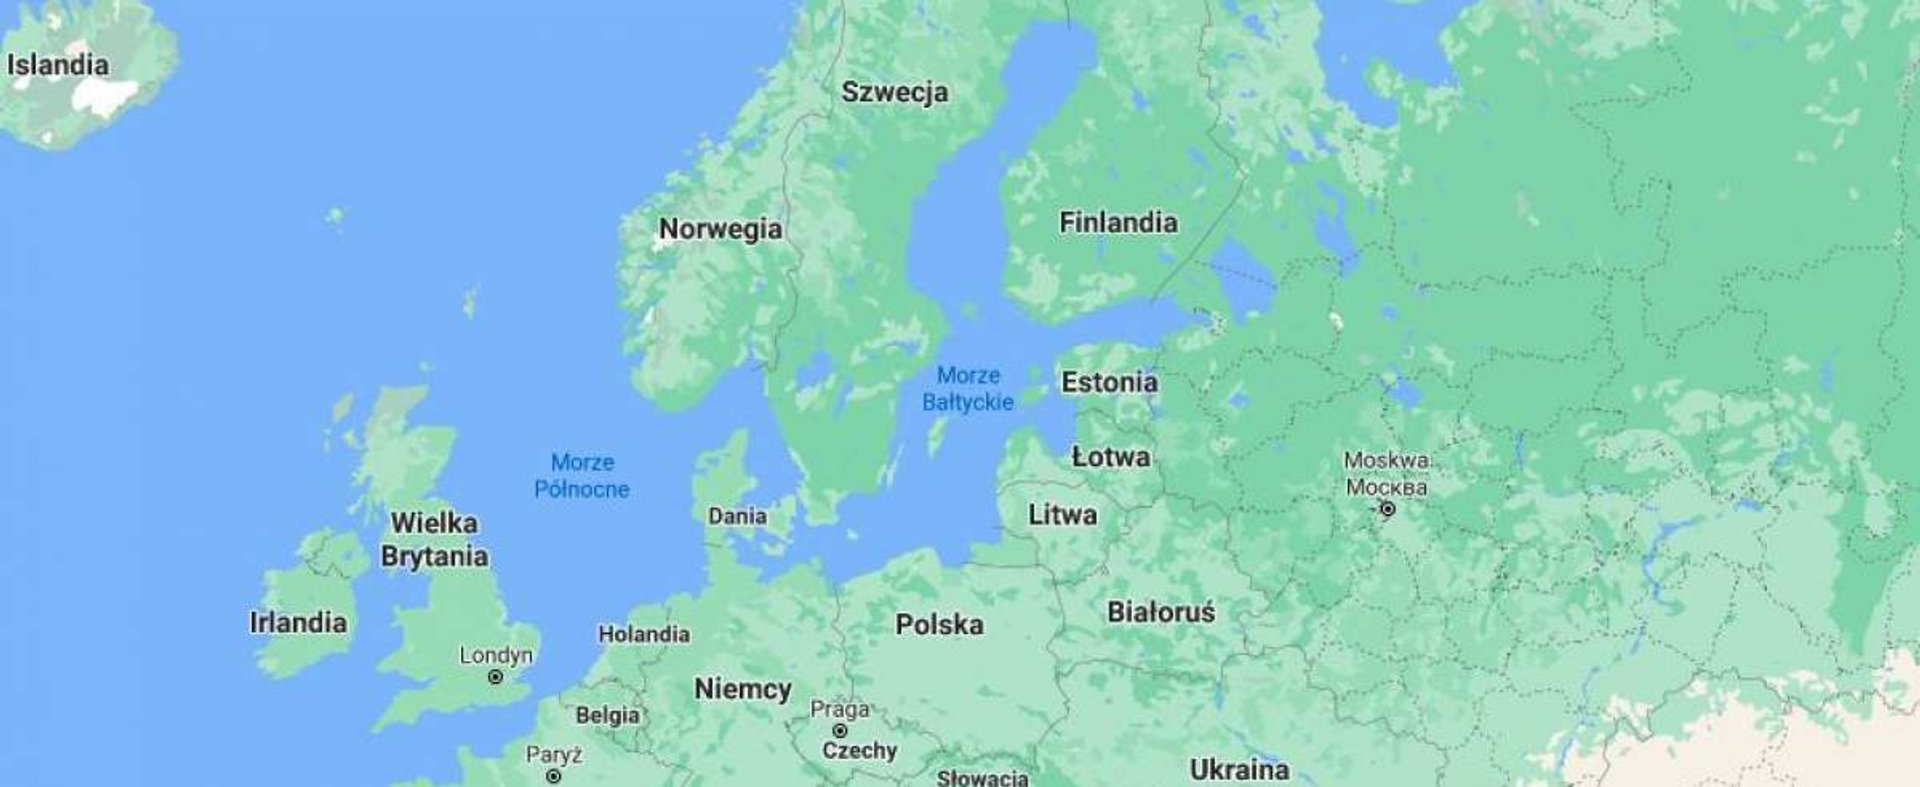 Morze Bałtyckie będzie miało tunel